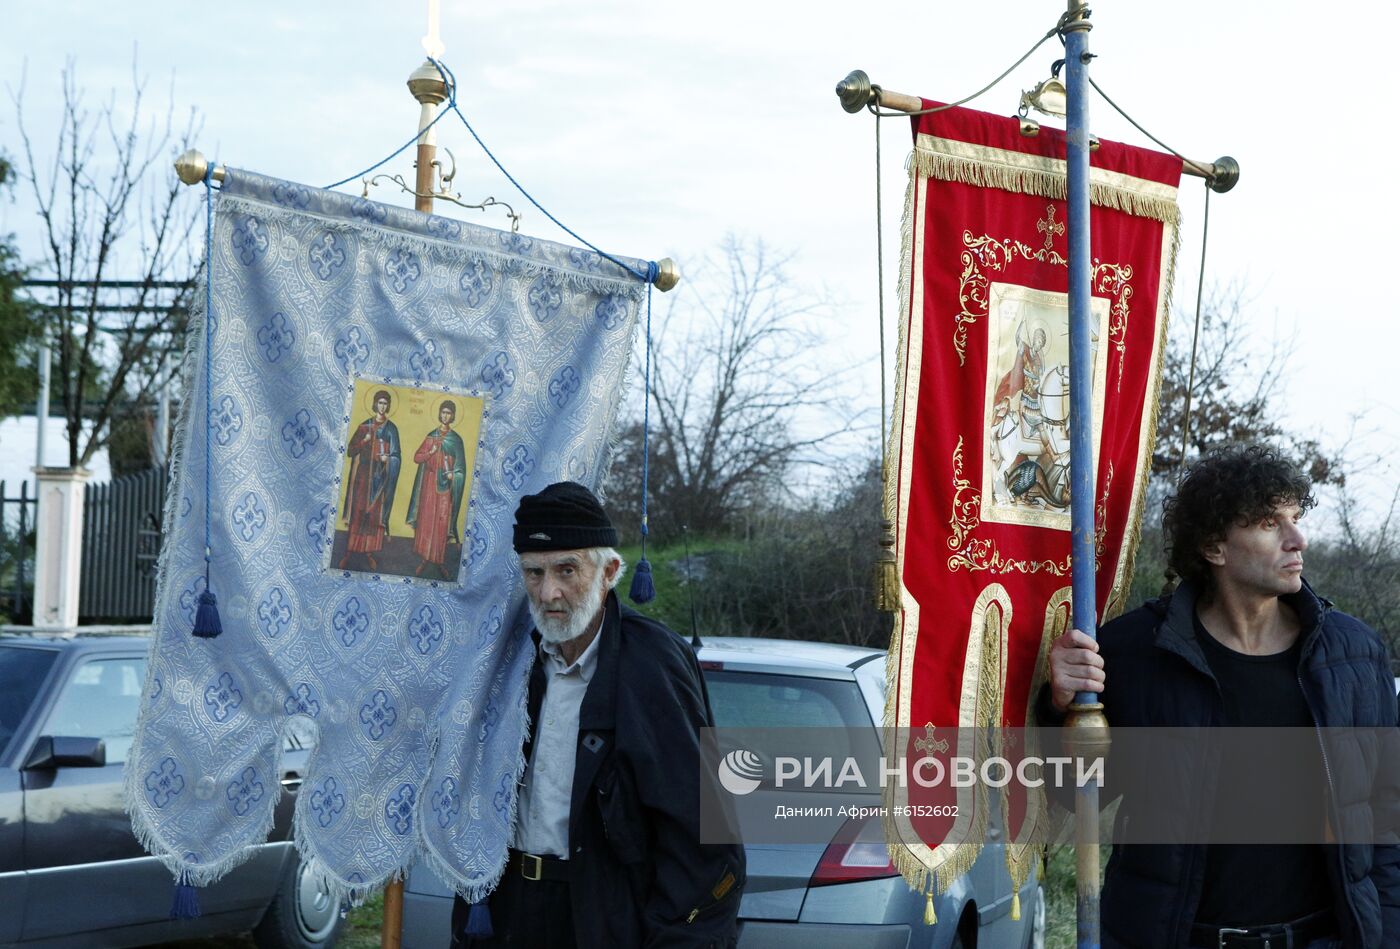 Мирное шествие в защиту прав Сербской православной церкви в Черногории